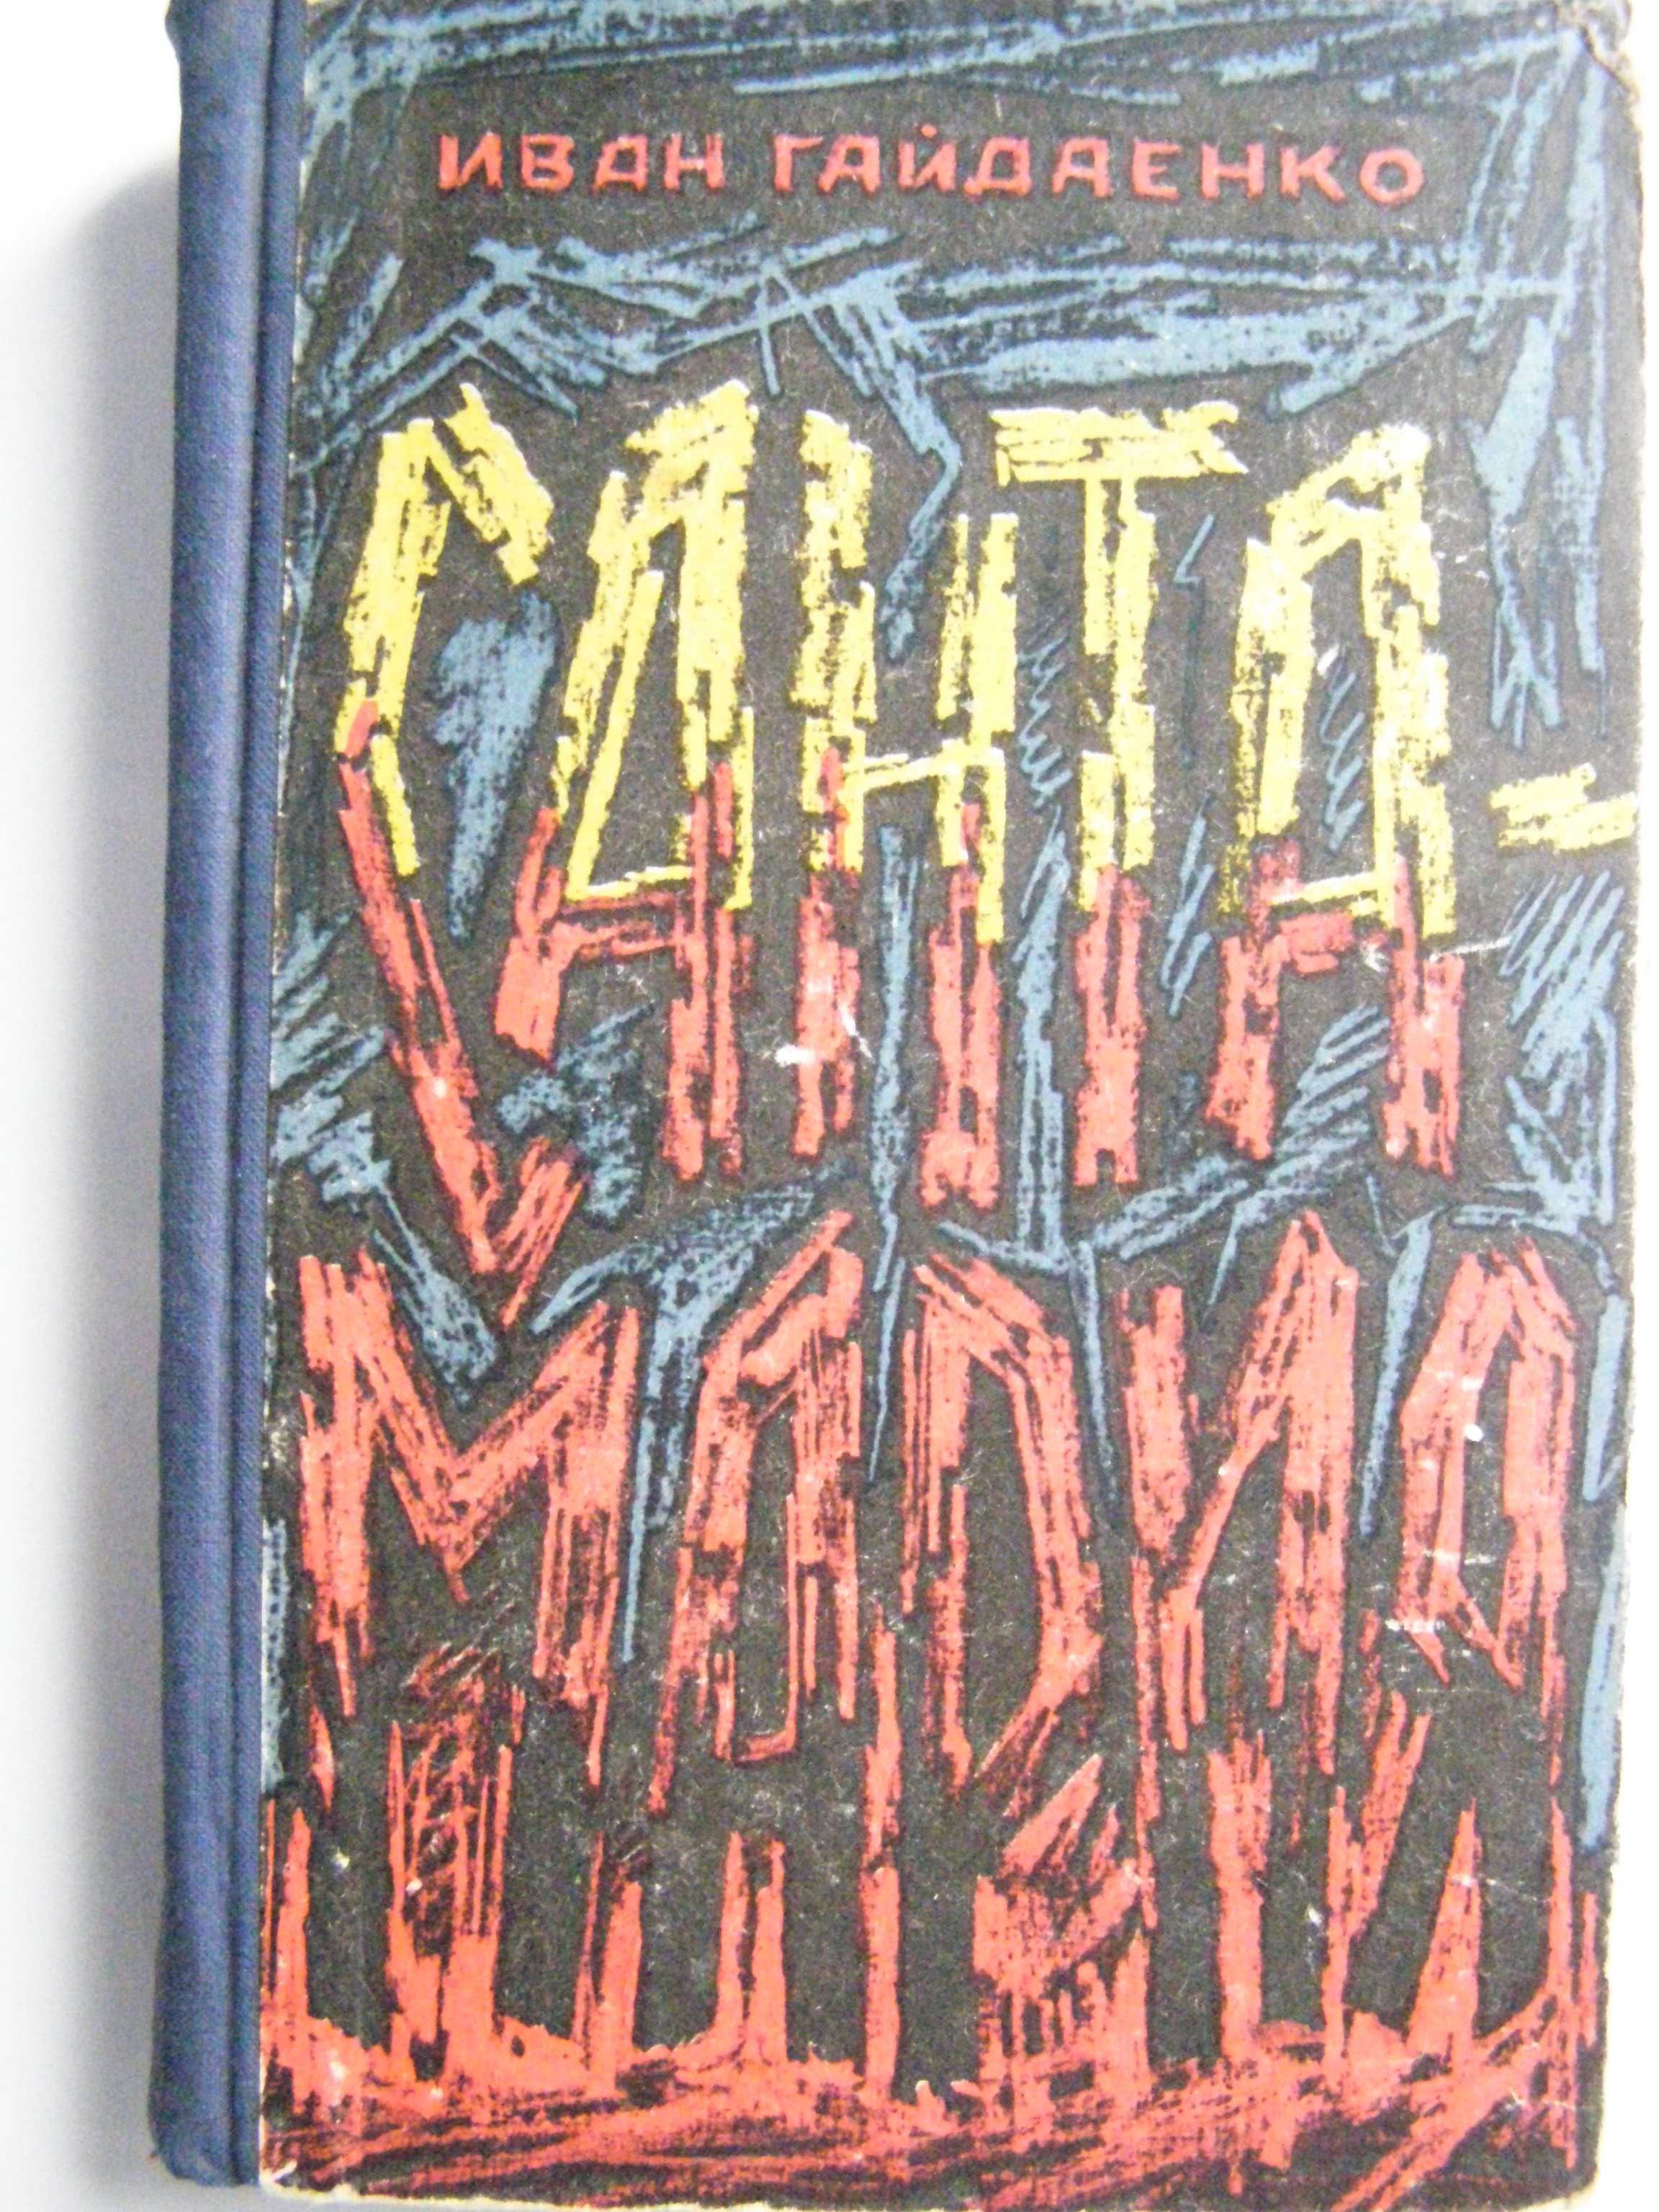 Иван Гайдаенко "Санта-Мария"  редкое издание 1967 года